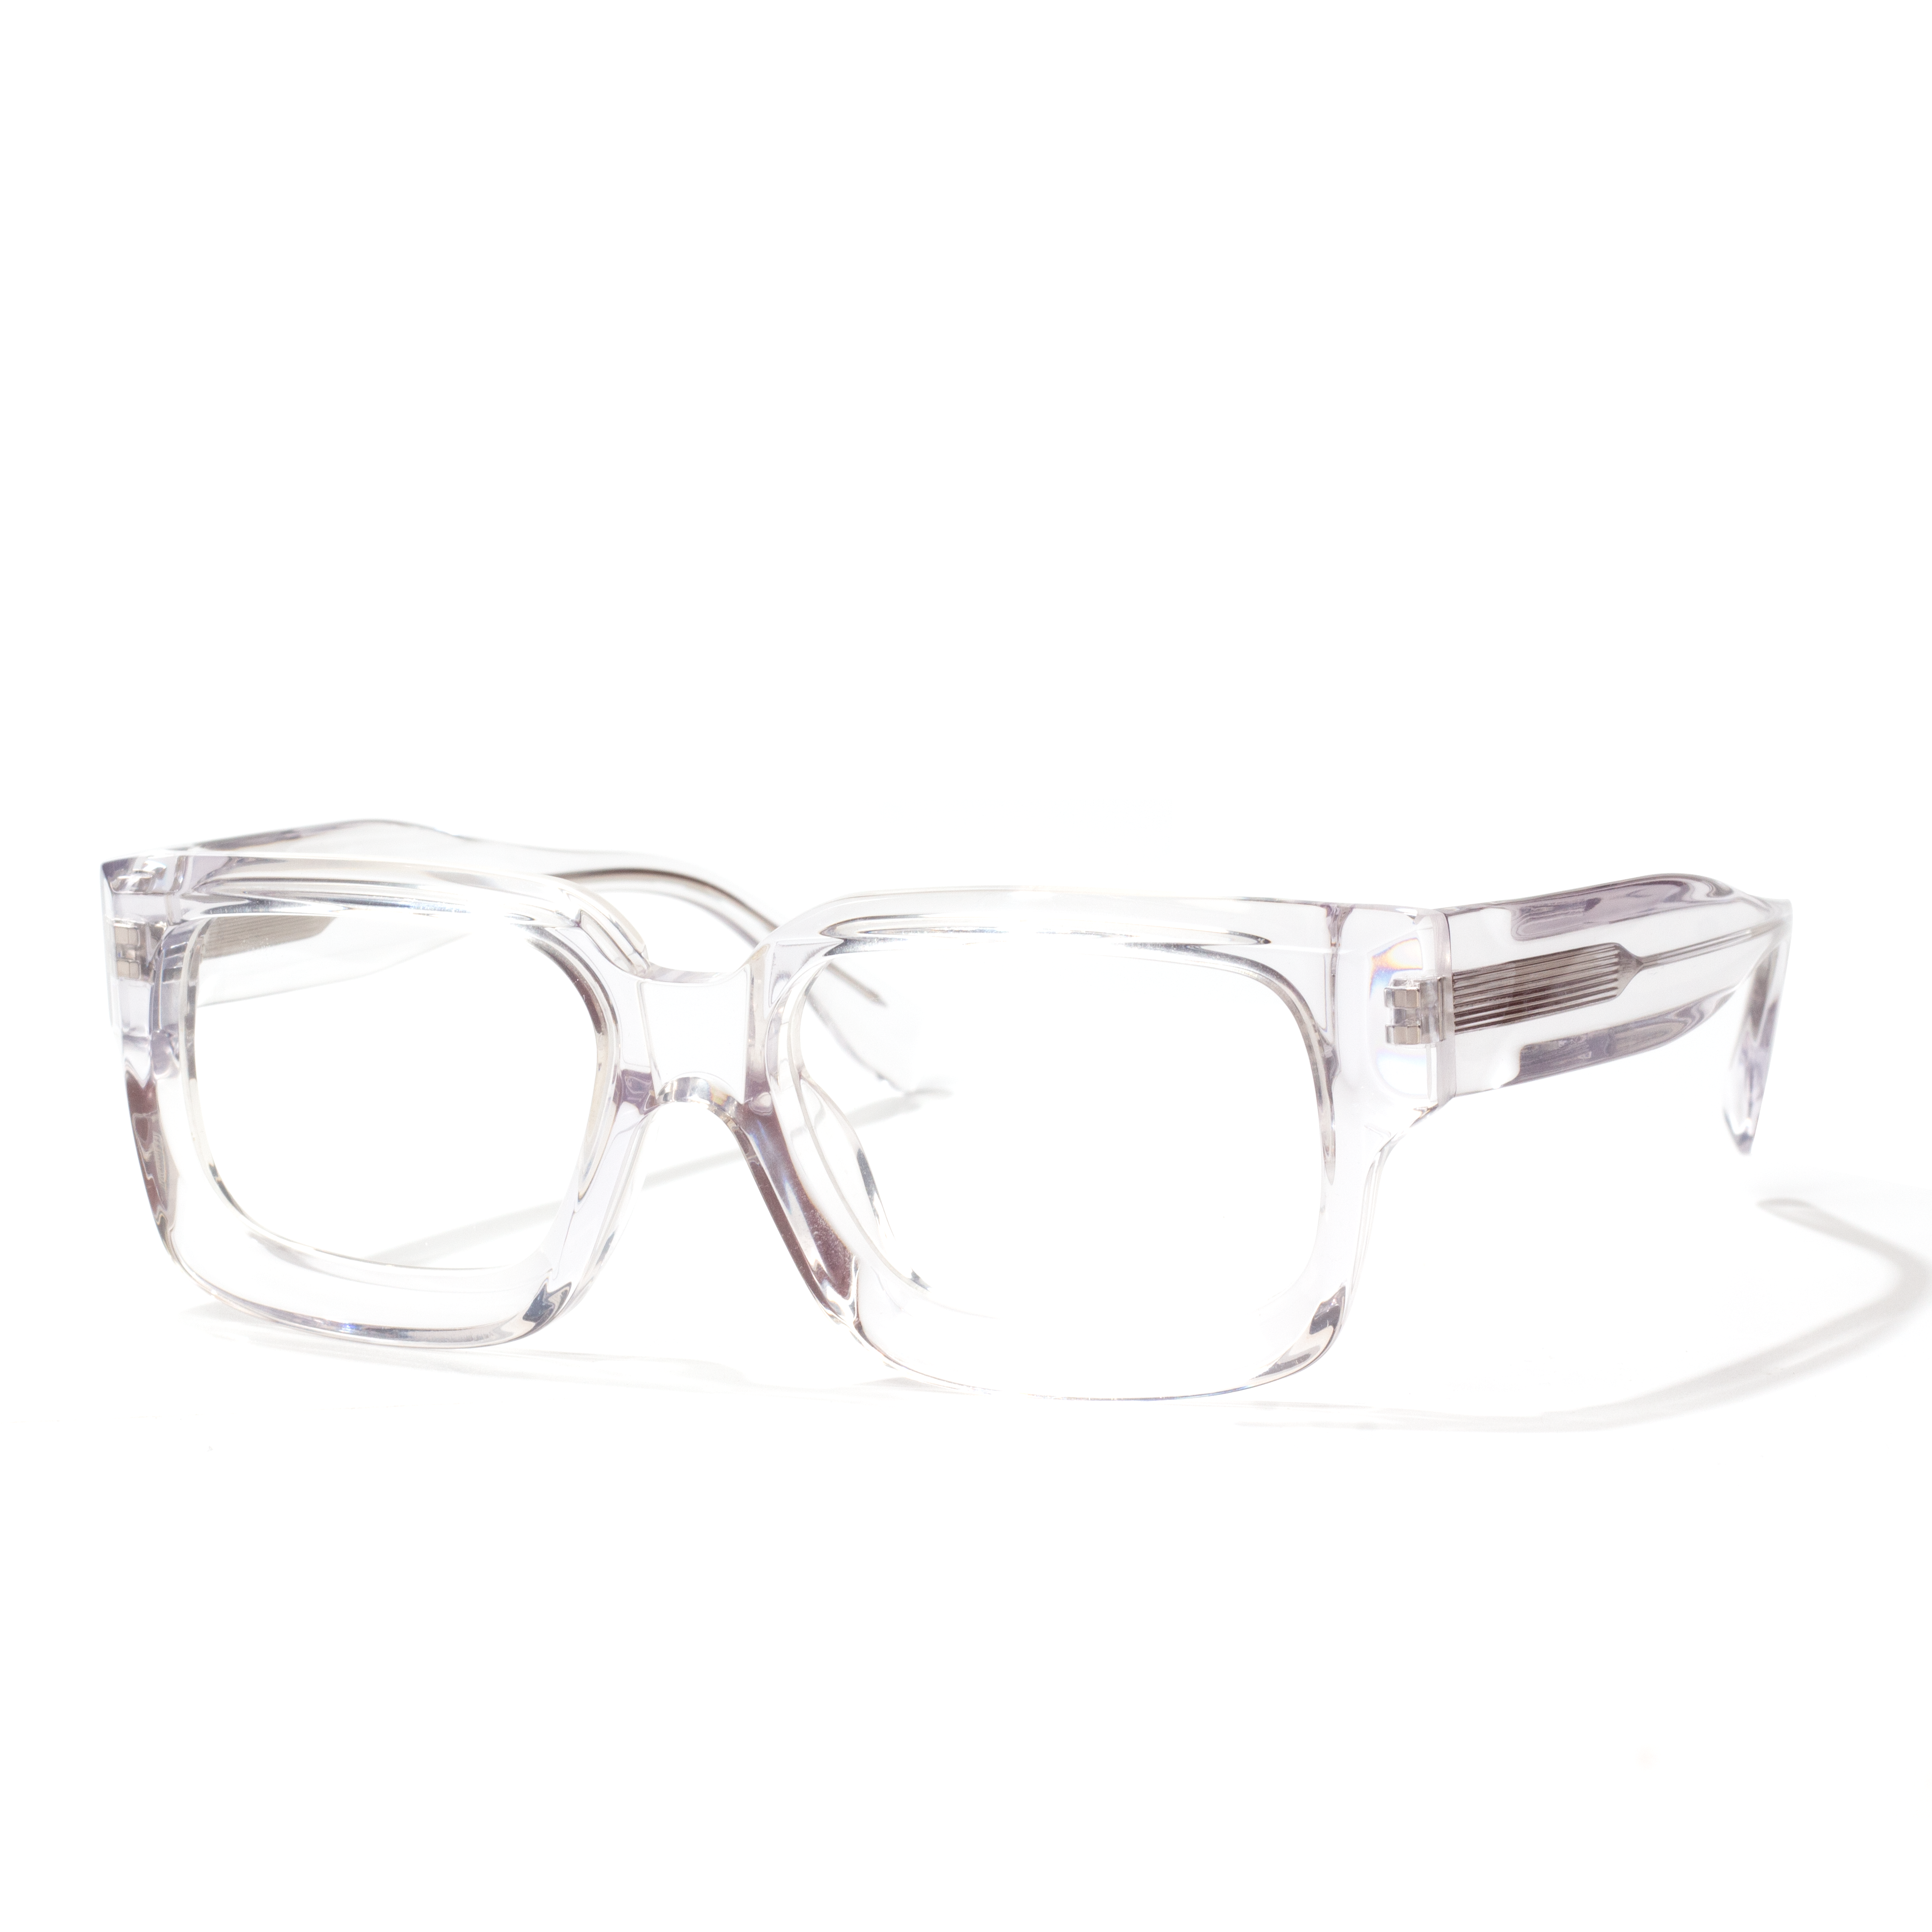 Popular acetate glasses (4)